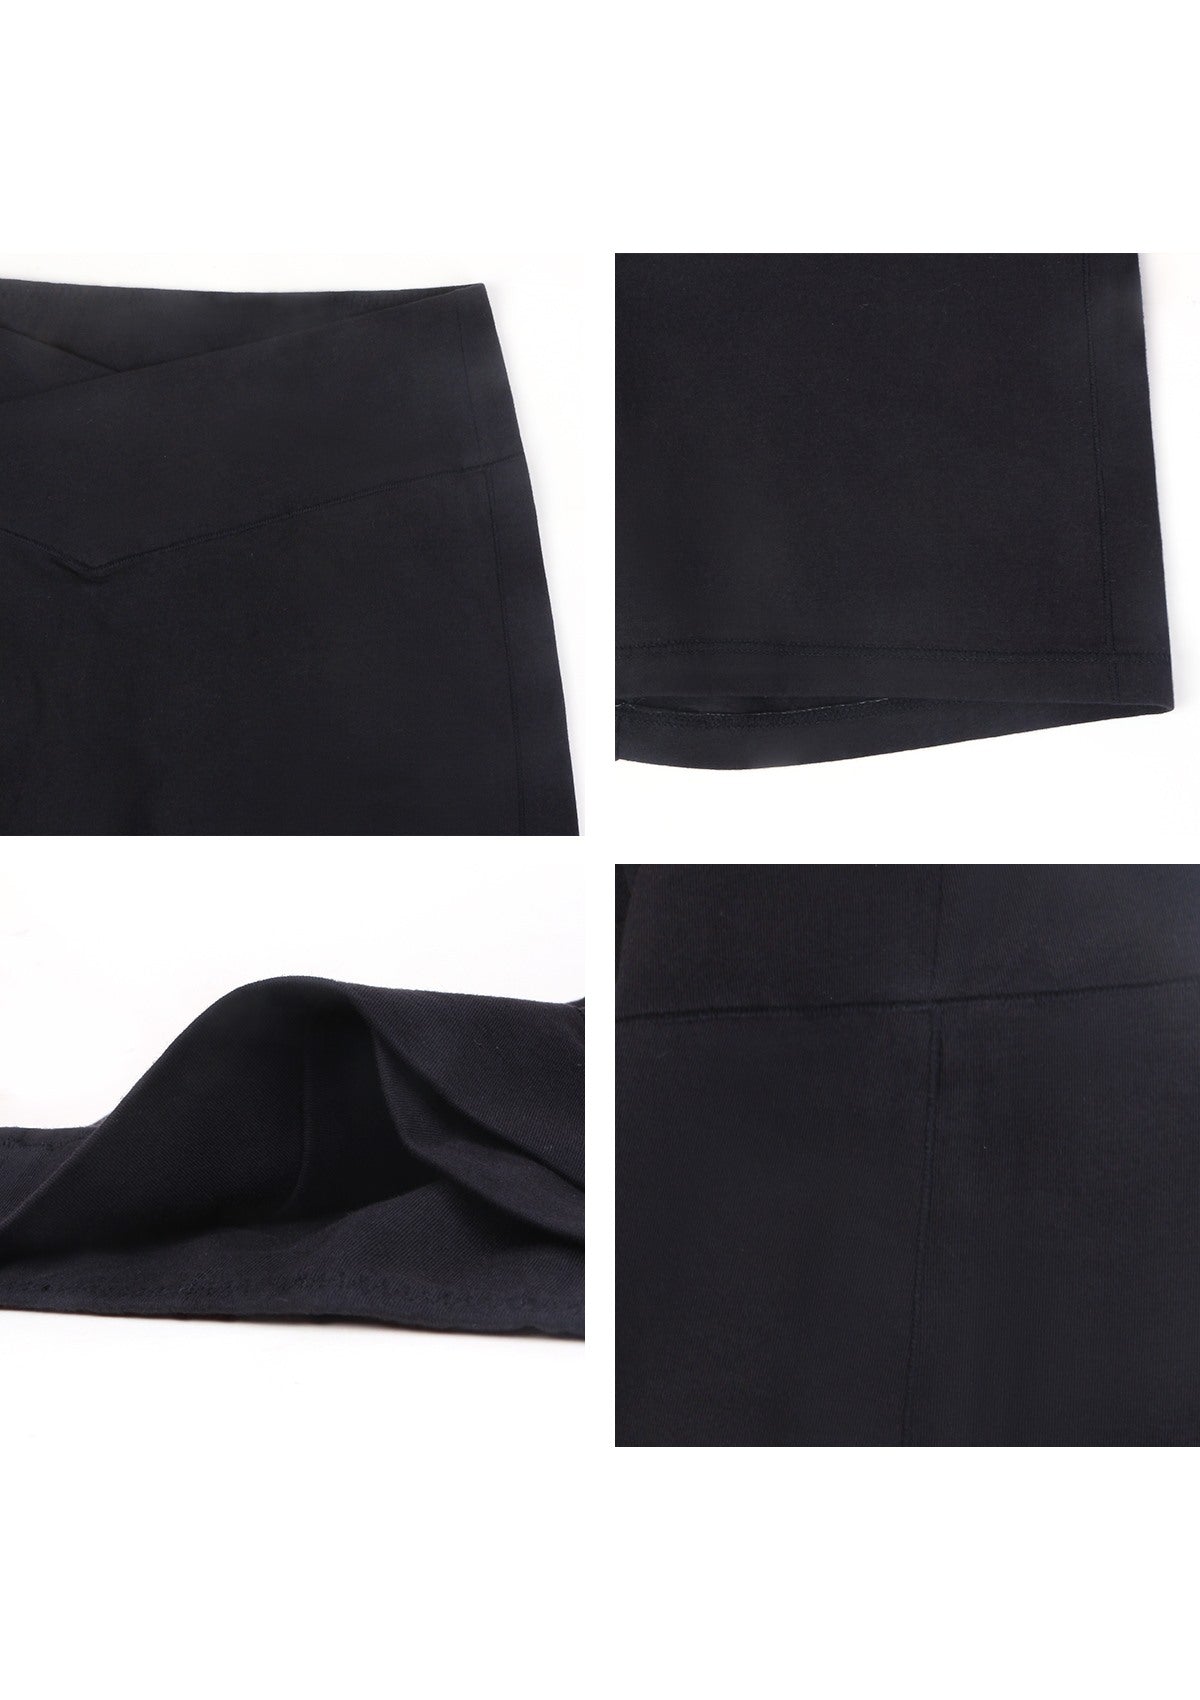 All-Day Comfort High-Rise Cotton Boyshorts Underwear 3 Pack - XXL / Black+White+Beige